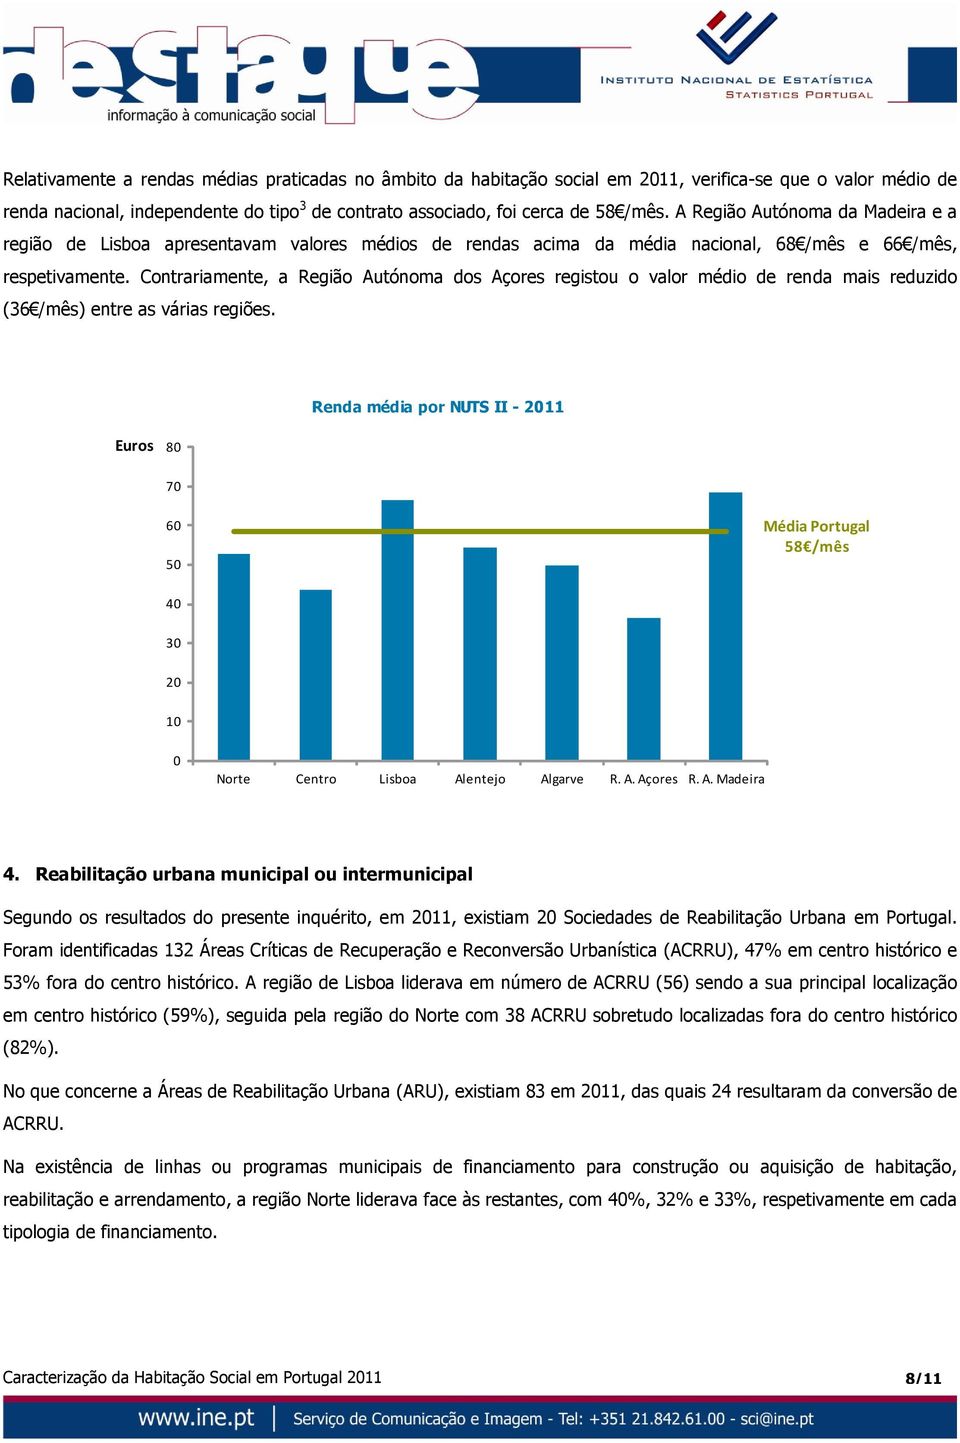 Contrariamente, a Região Autónoma dos Açores registou o valor médio de renda mais reduzido (36 /mês) entre as várias regiões.